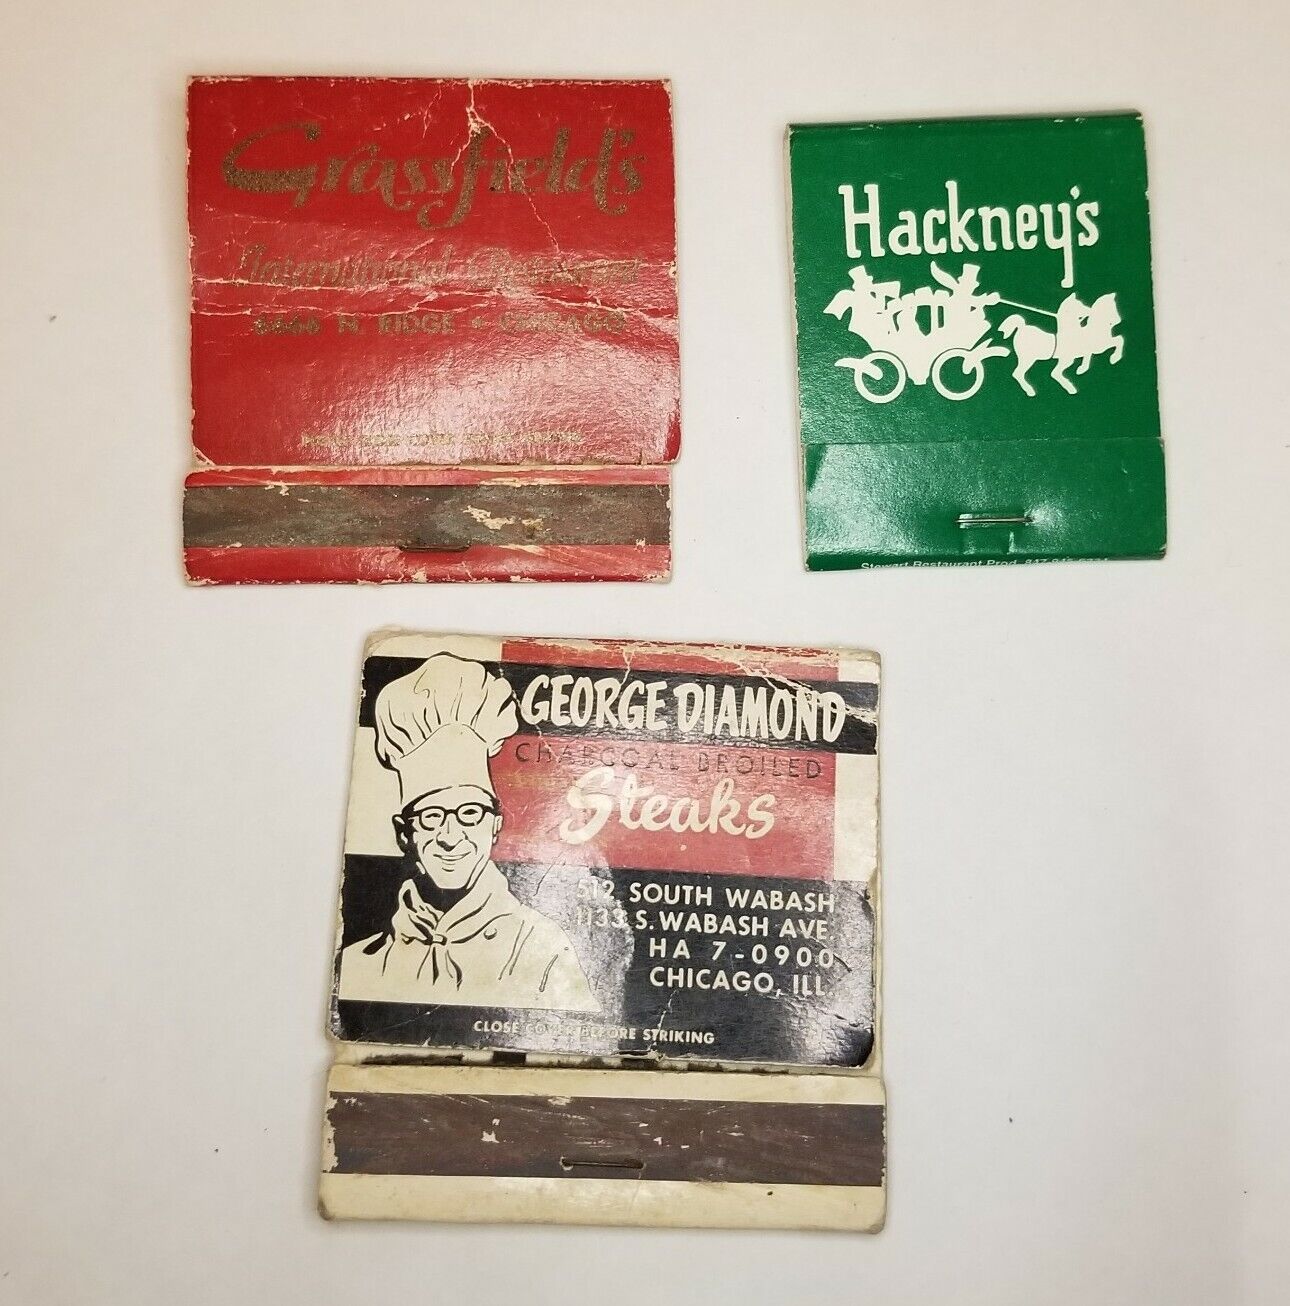 Vtg Chicago Restaurant George Diamond Grassfield\'s Hackney\'s Lot of 3 Matchbooks